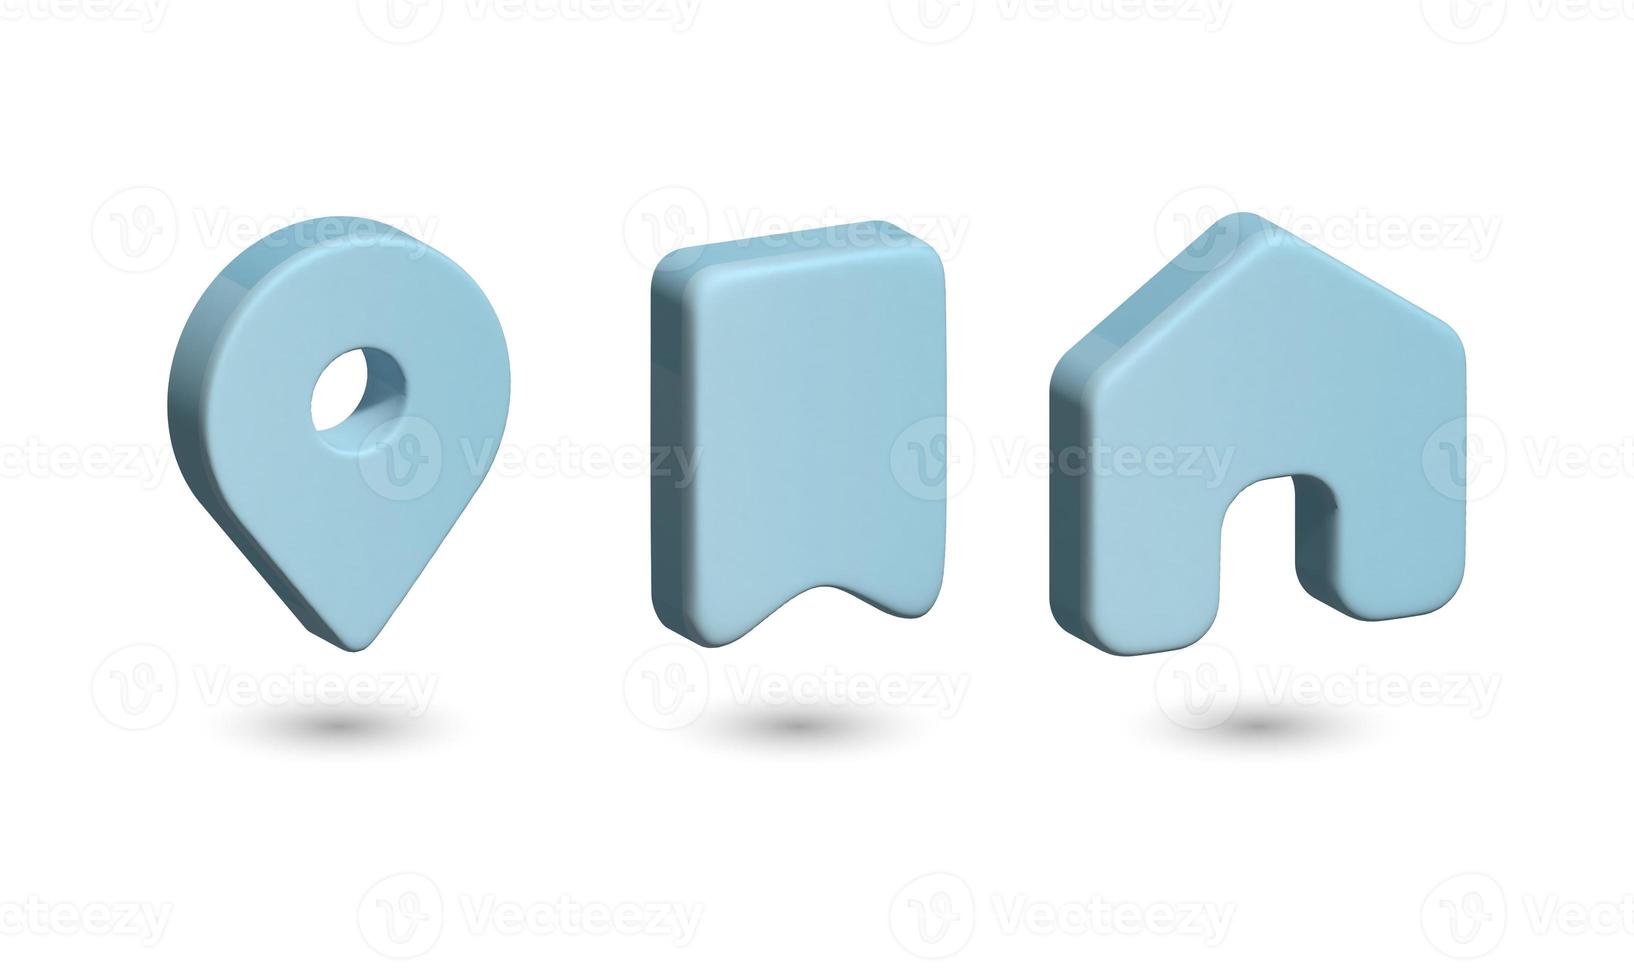 en uppsättning 3d-ikoner, ett hus, en flagga och en platsskylt, i ljusblått på en vit bakgrund. ikoner för internet, för webbplatsdesign. 3d illustration foto